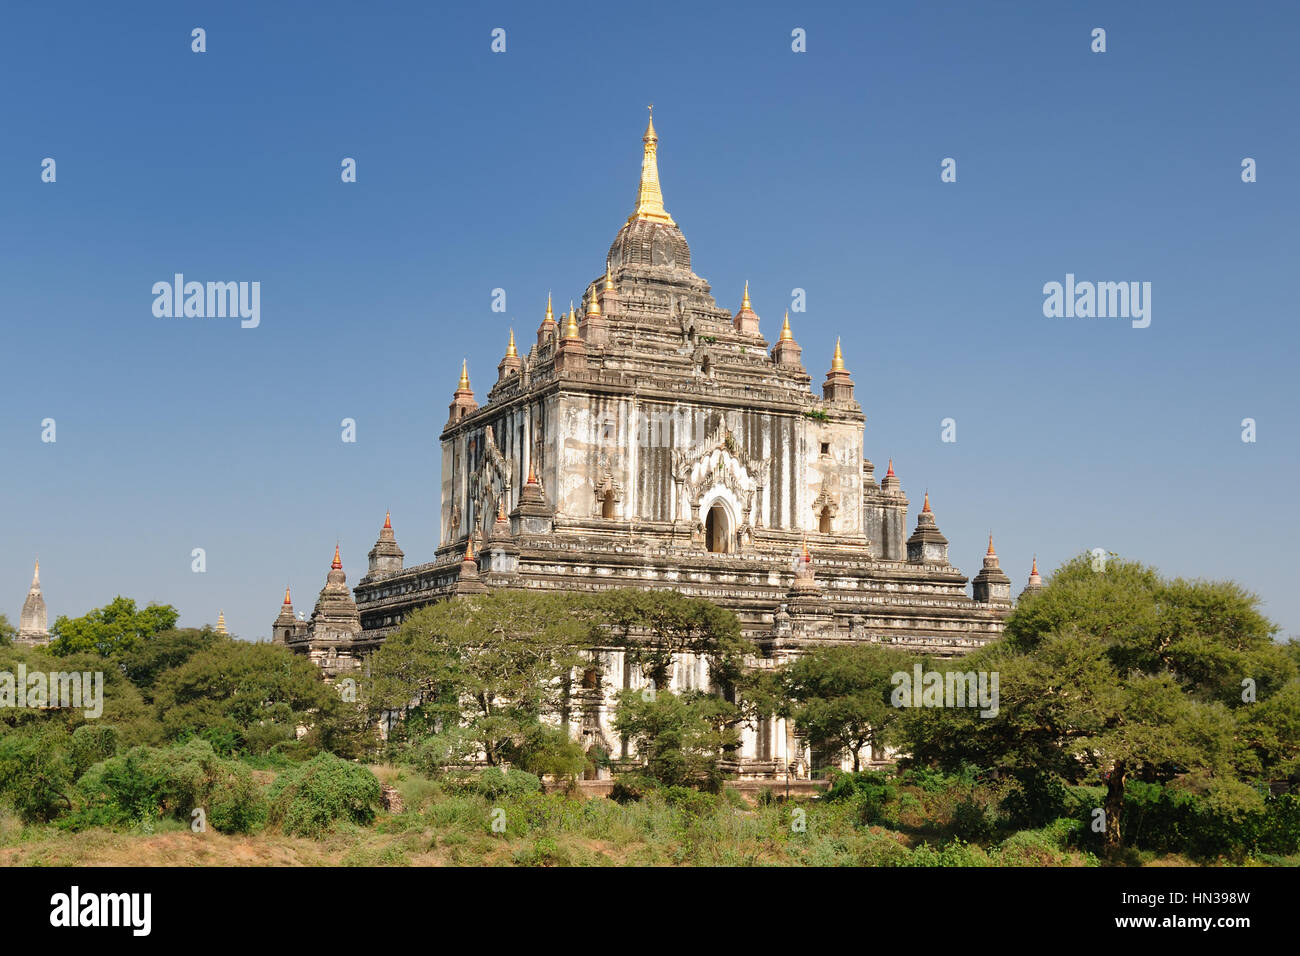 Myanmar (Birmanie), Bagan, Thatbyinny Pahto Temple - Bagan temple est construit la plus haute de deux étages en forme de couleur blanche. Construit en 1144 par Alaungsithu. Banque D'Images